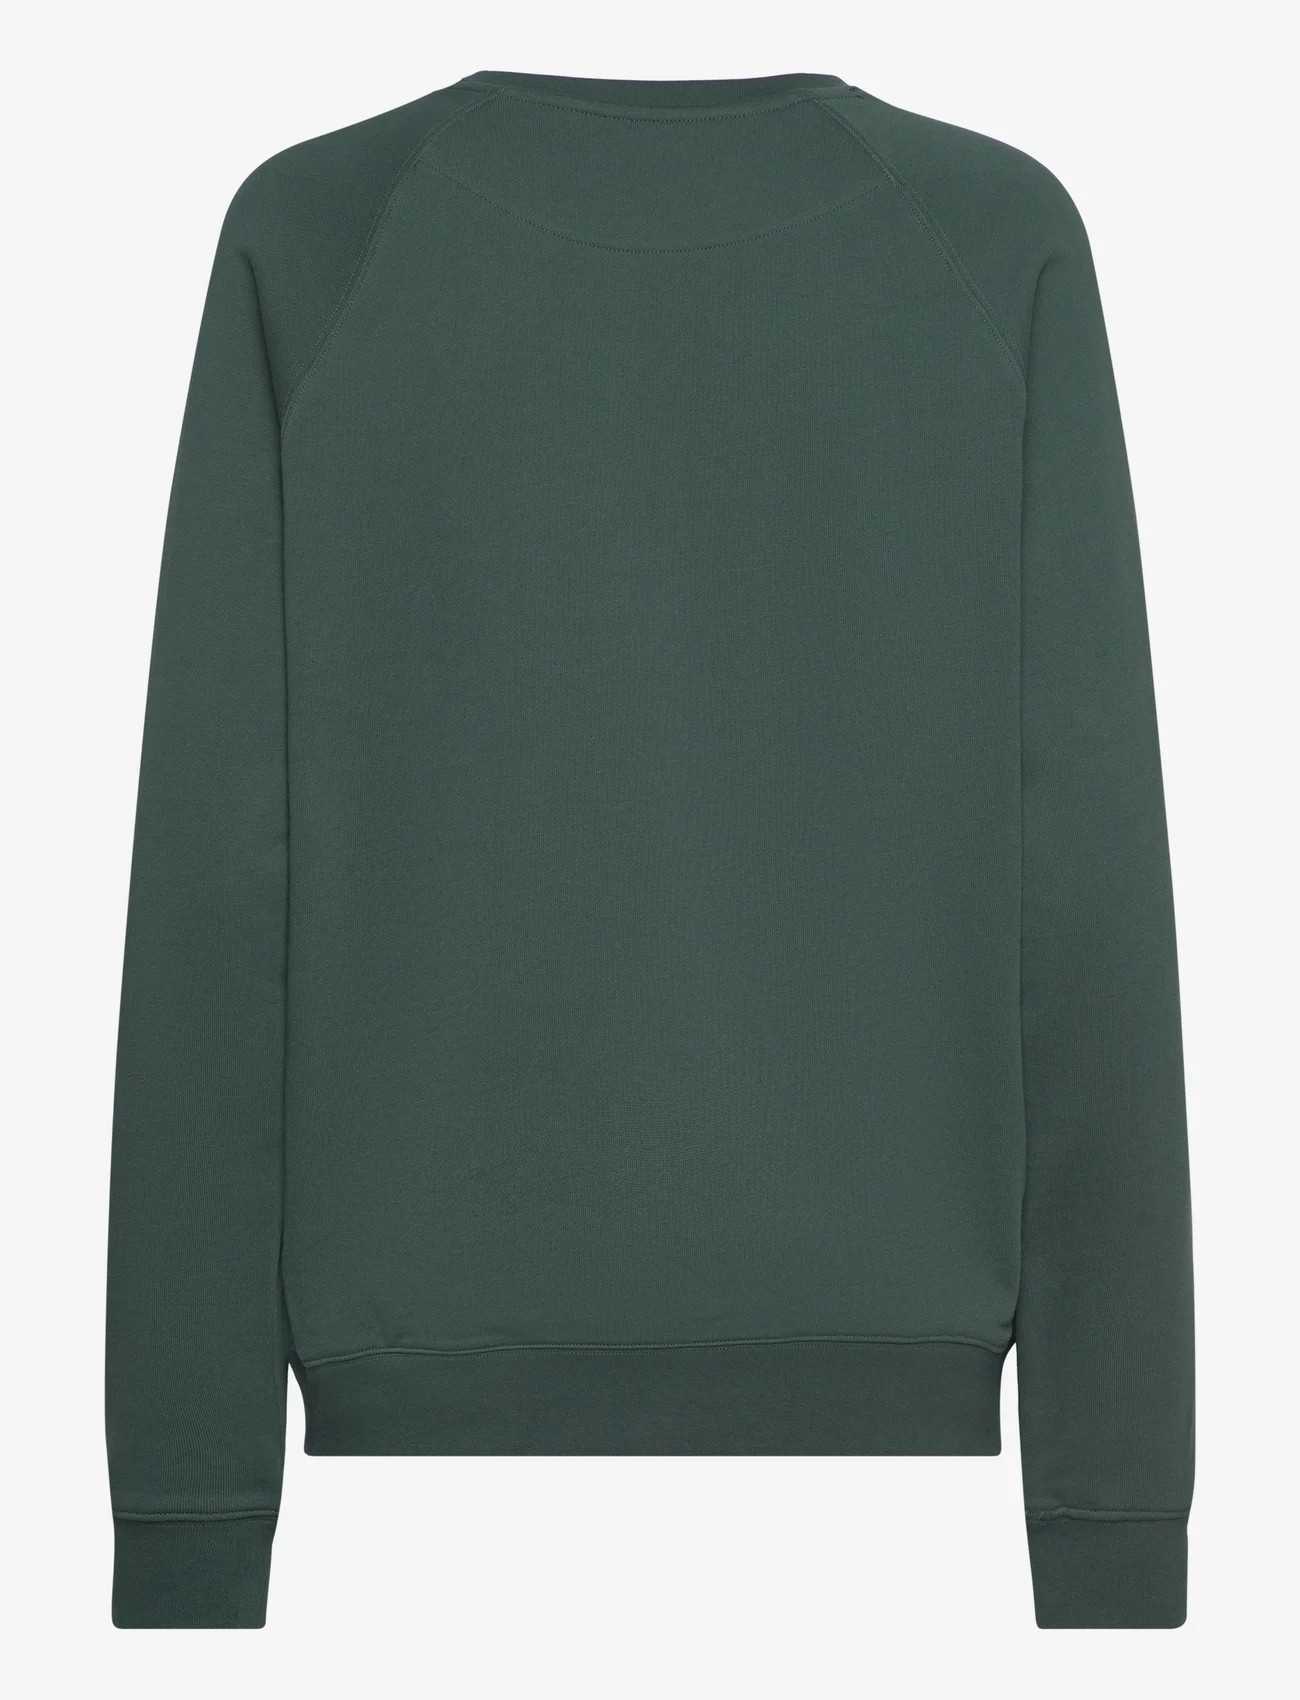 Boob - Nursing sweatshirt - kapuzenpullover - deep green - 1